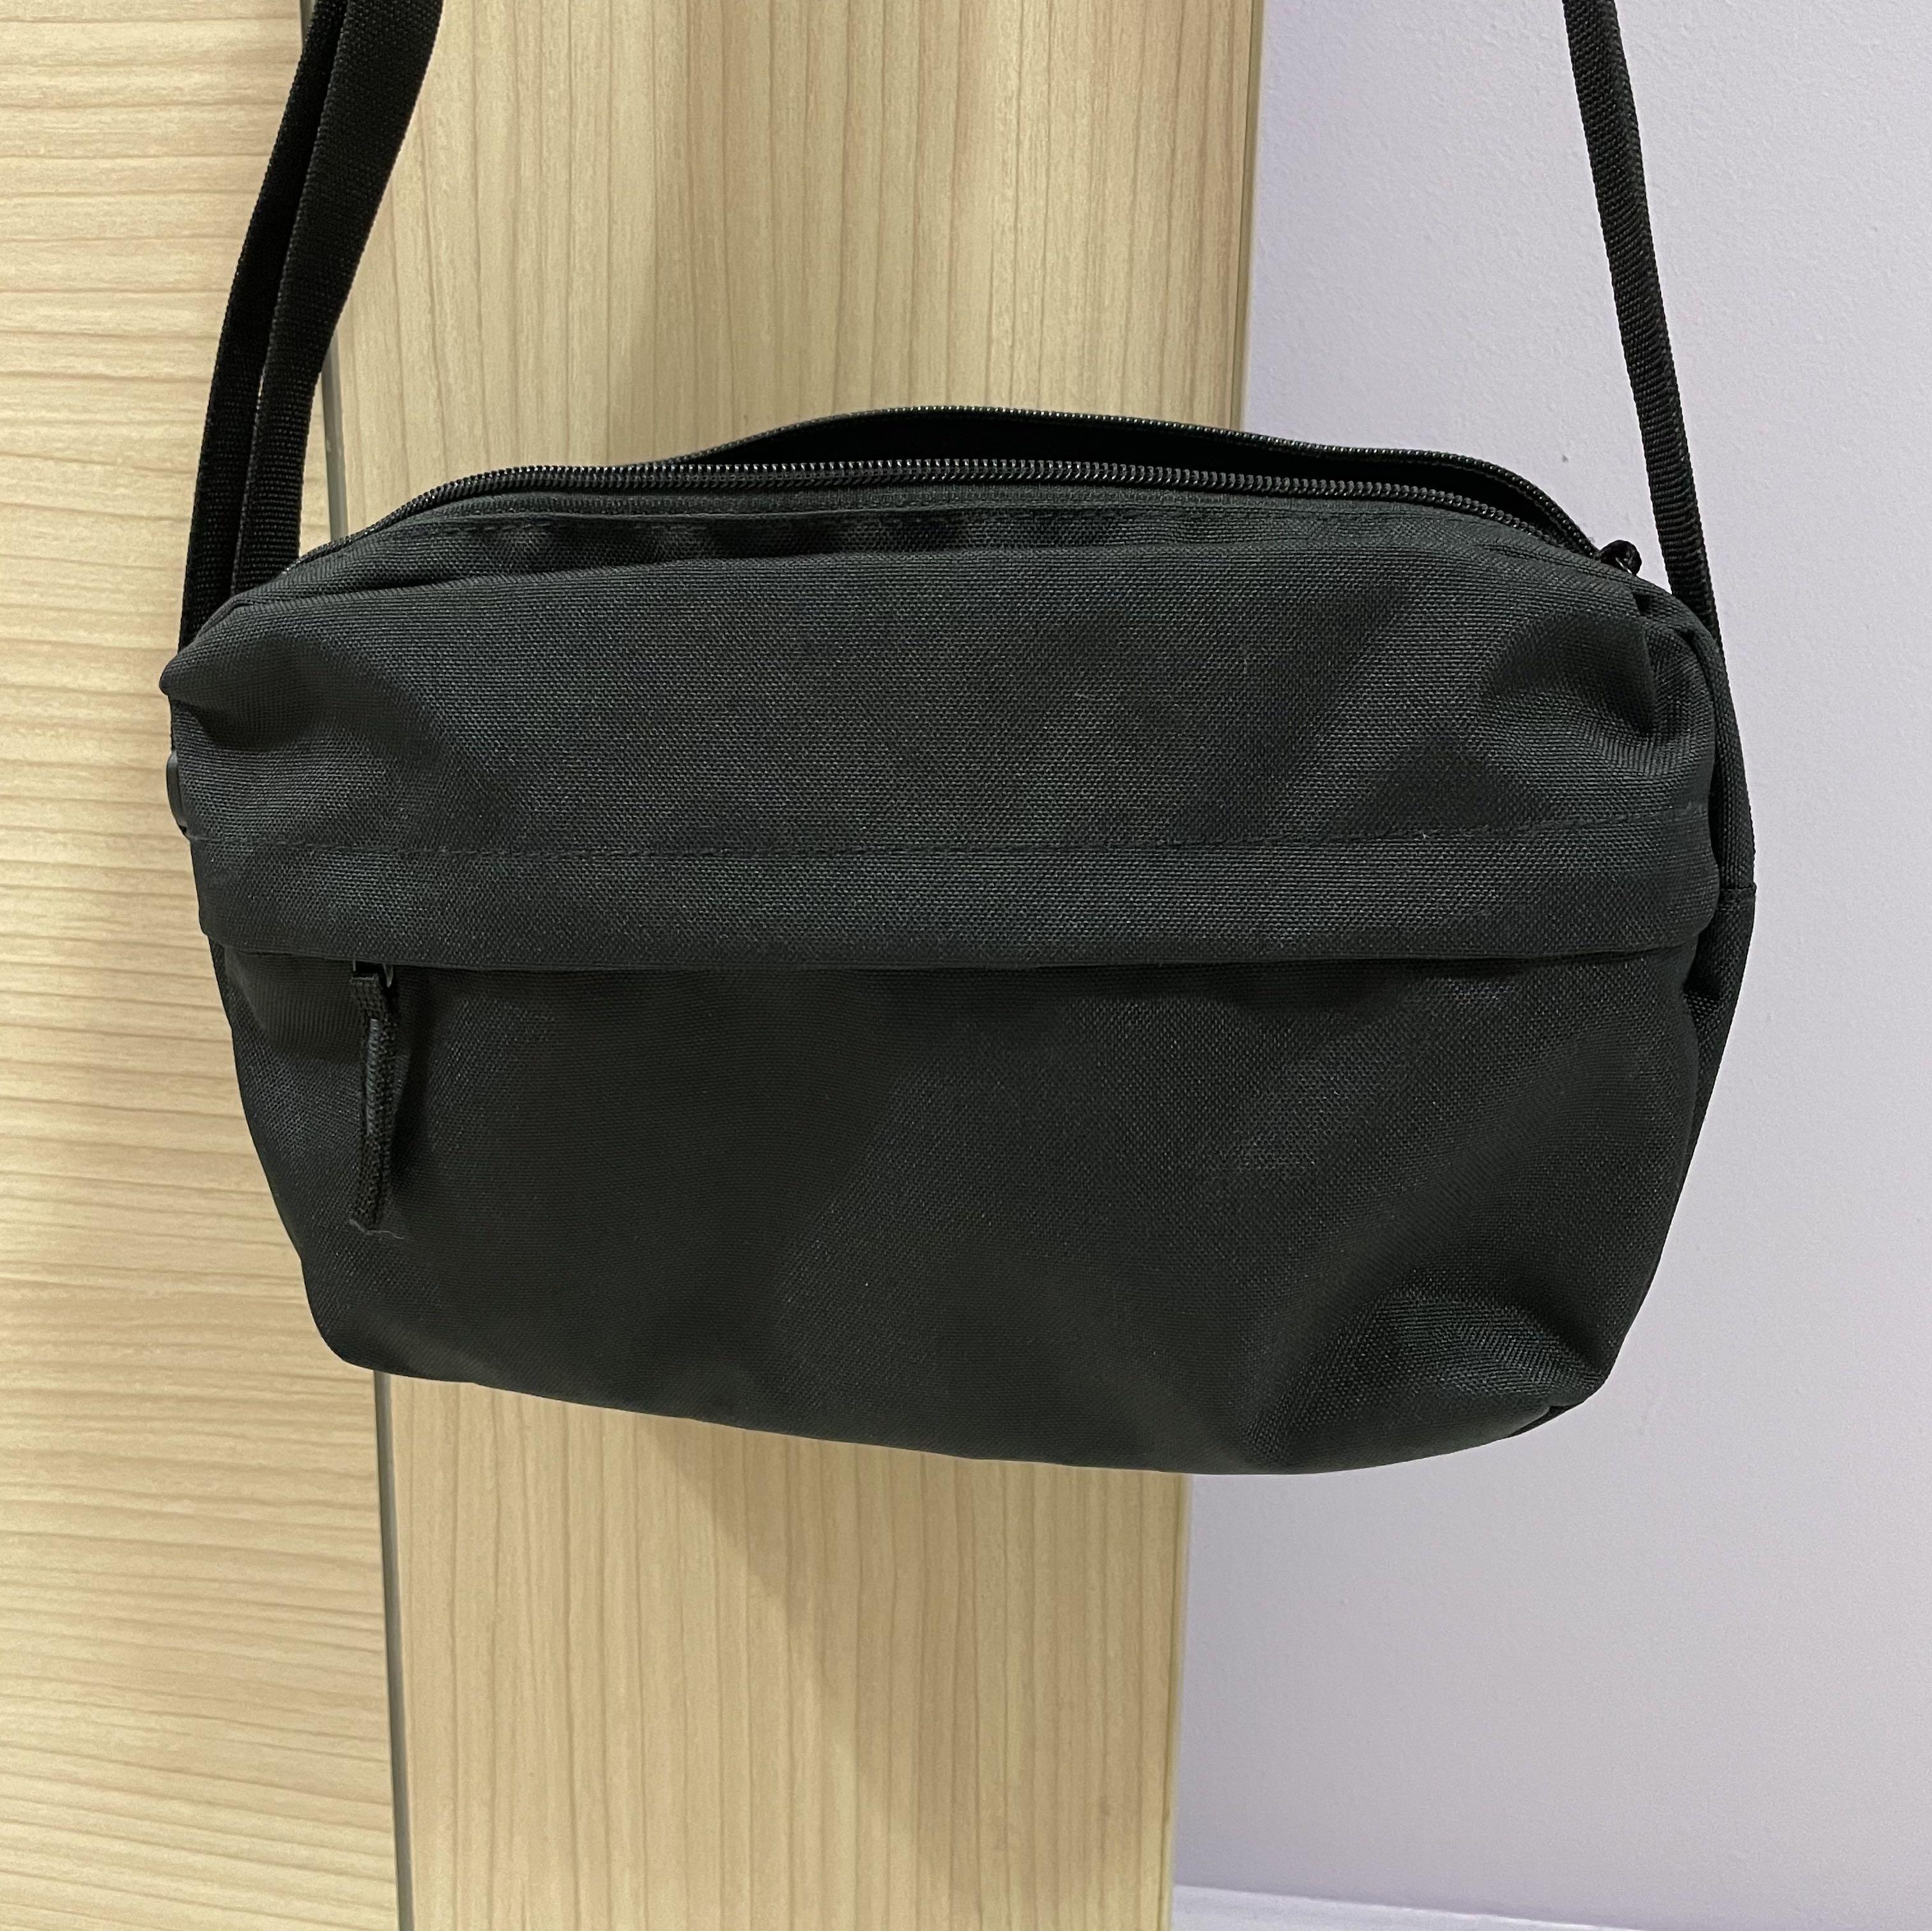 MUJI polyester shoulder bag with back pocket (black), Women's Fashion ...